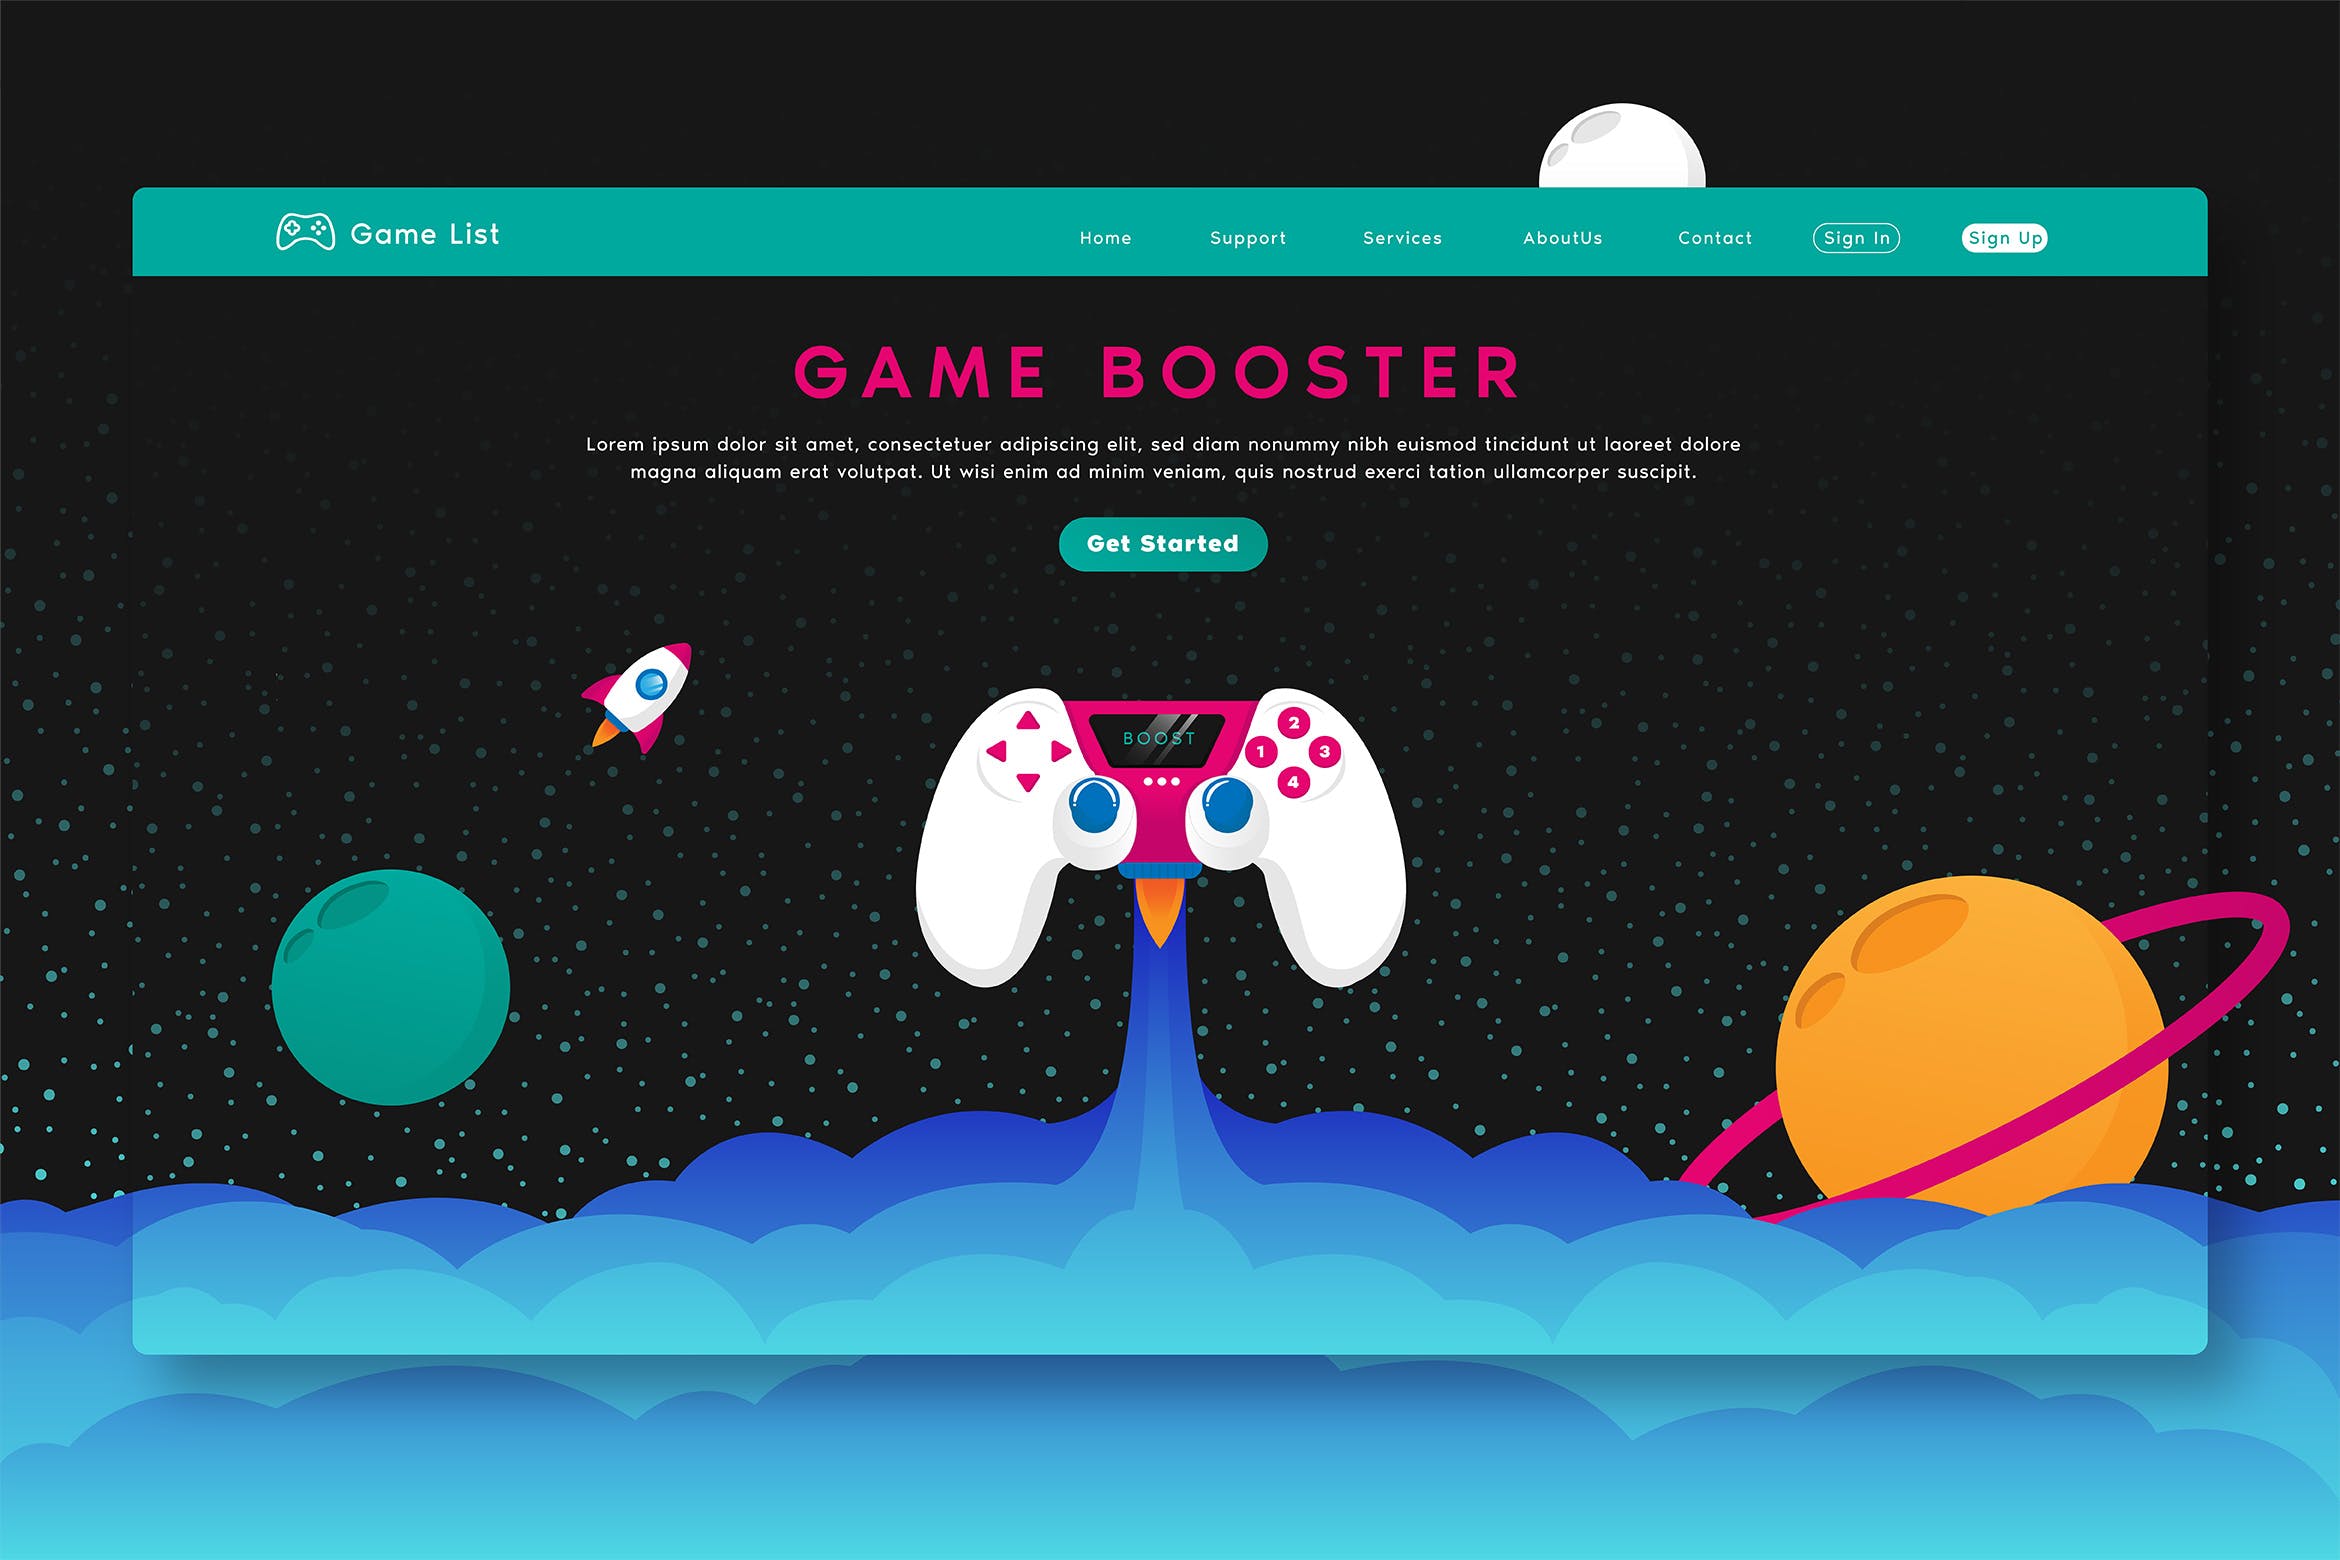 游戏加速器软件网站矢量插画模板 Game Booster – Web Header & Vector Template GR插图